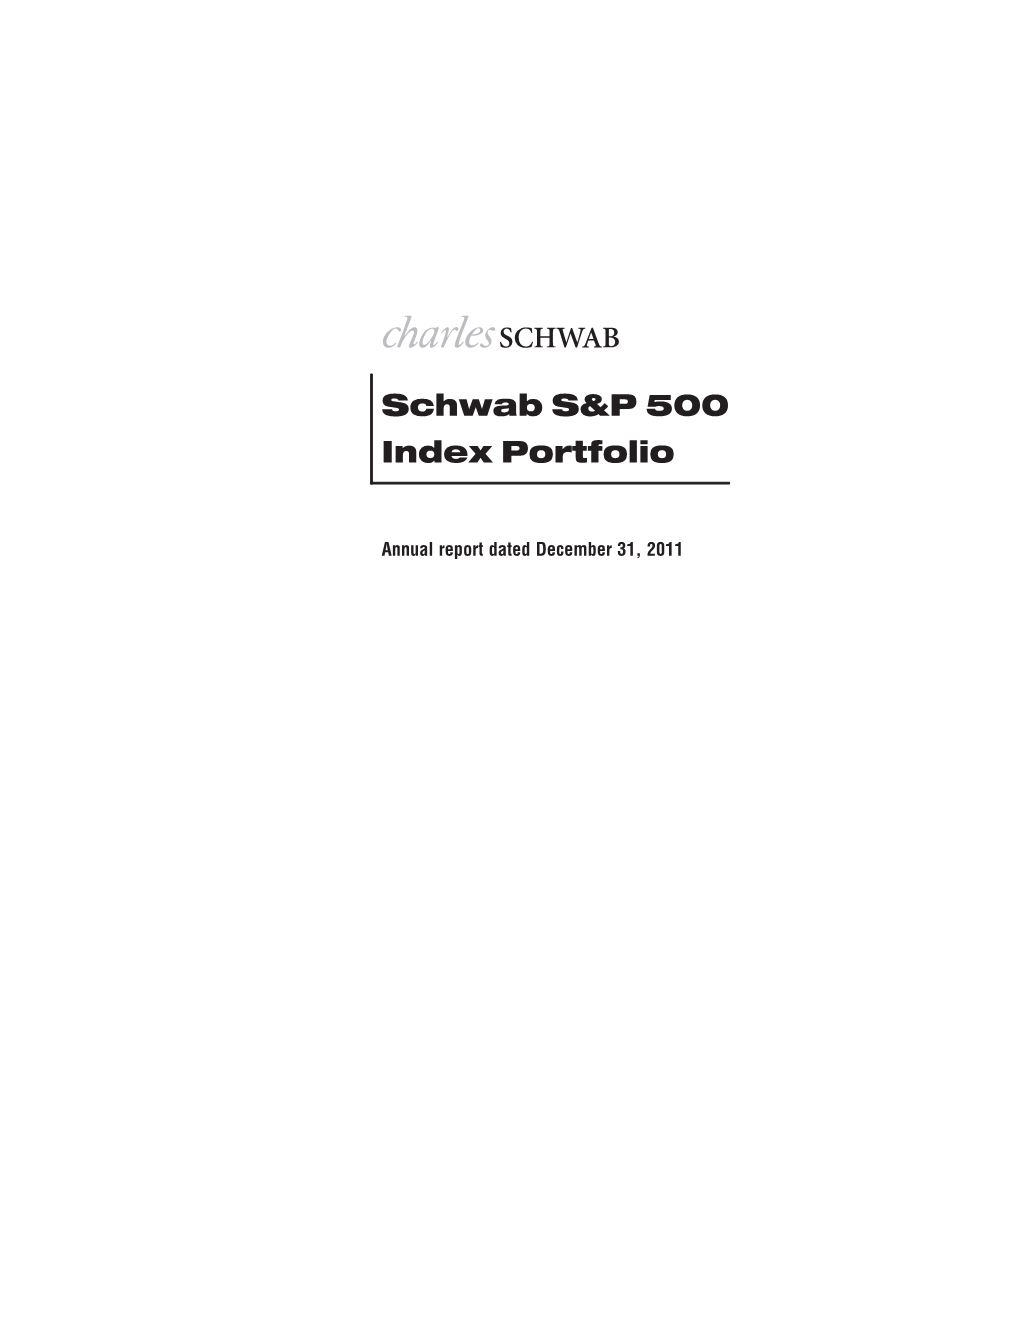 Schwab S&P 500 Index Portfolio